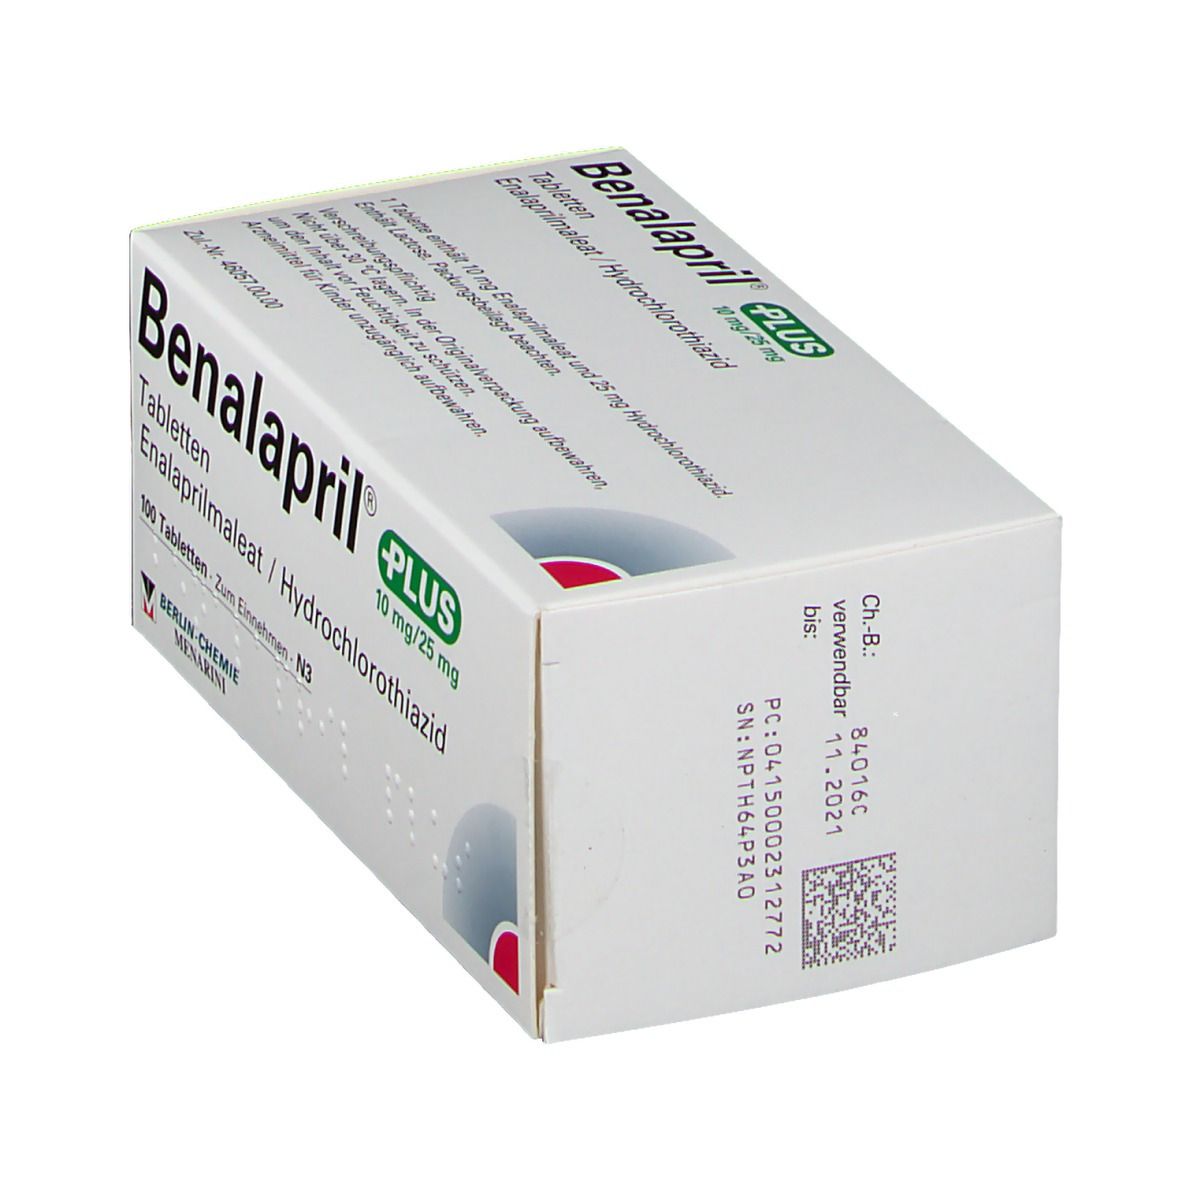 Benalapril® Plus 10 mg/25 mg